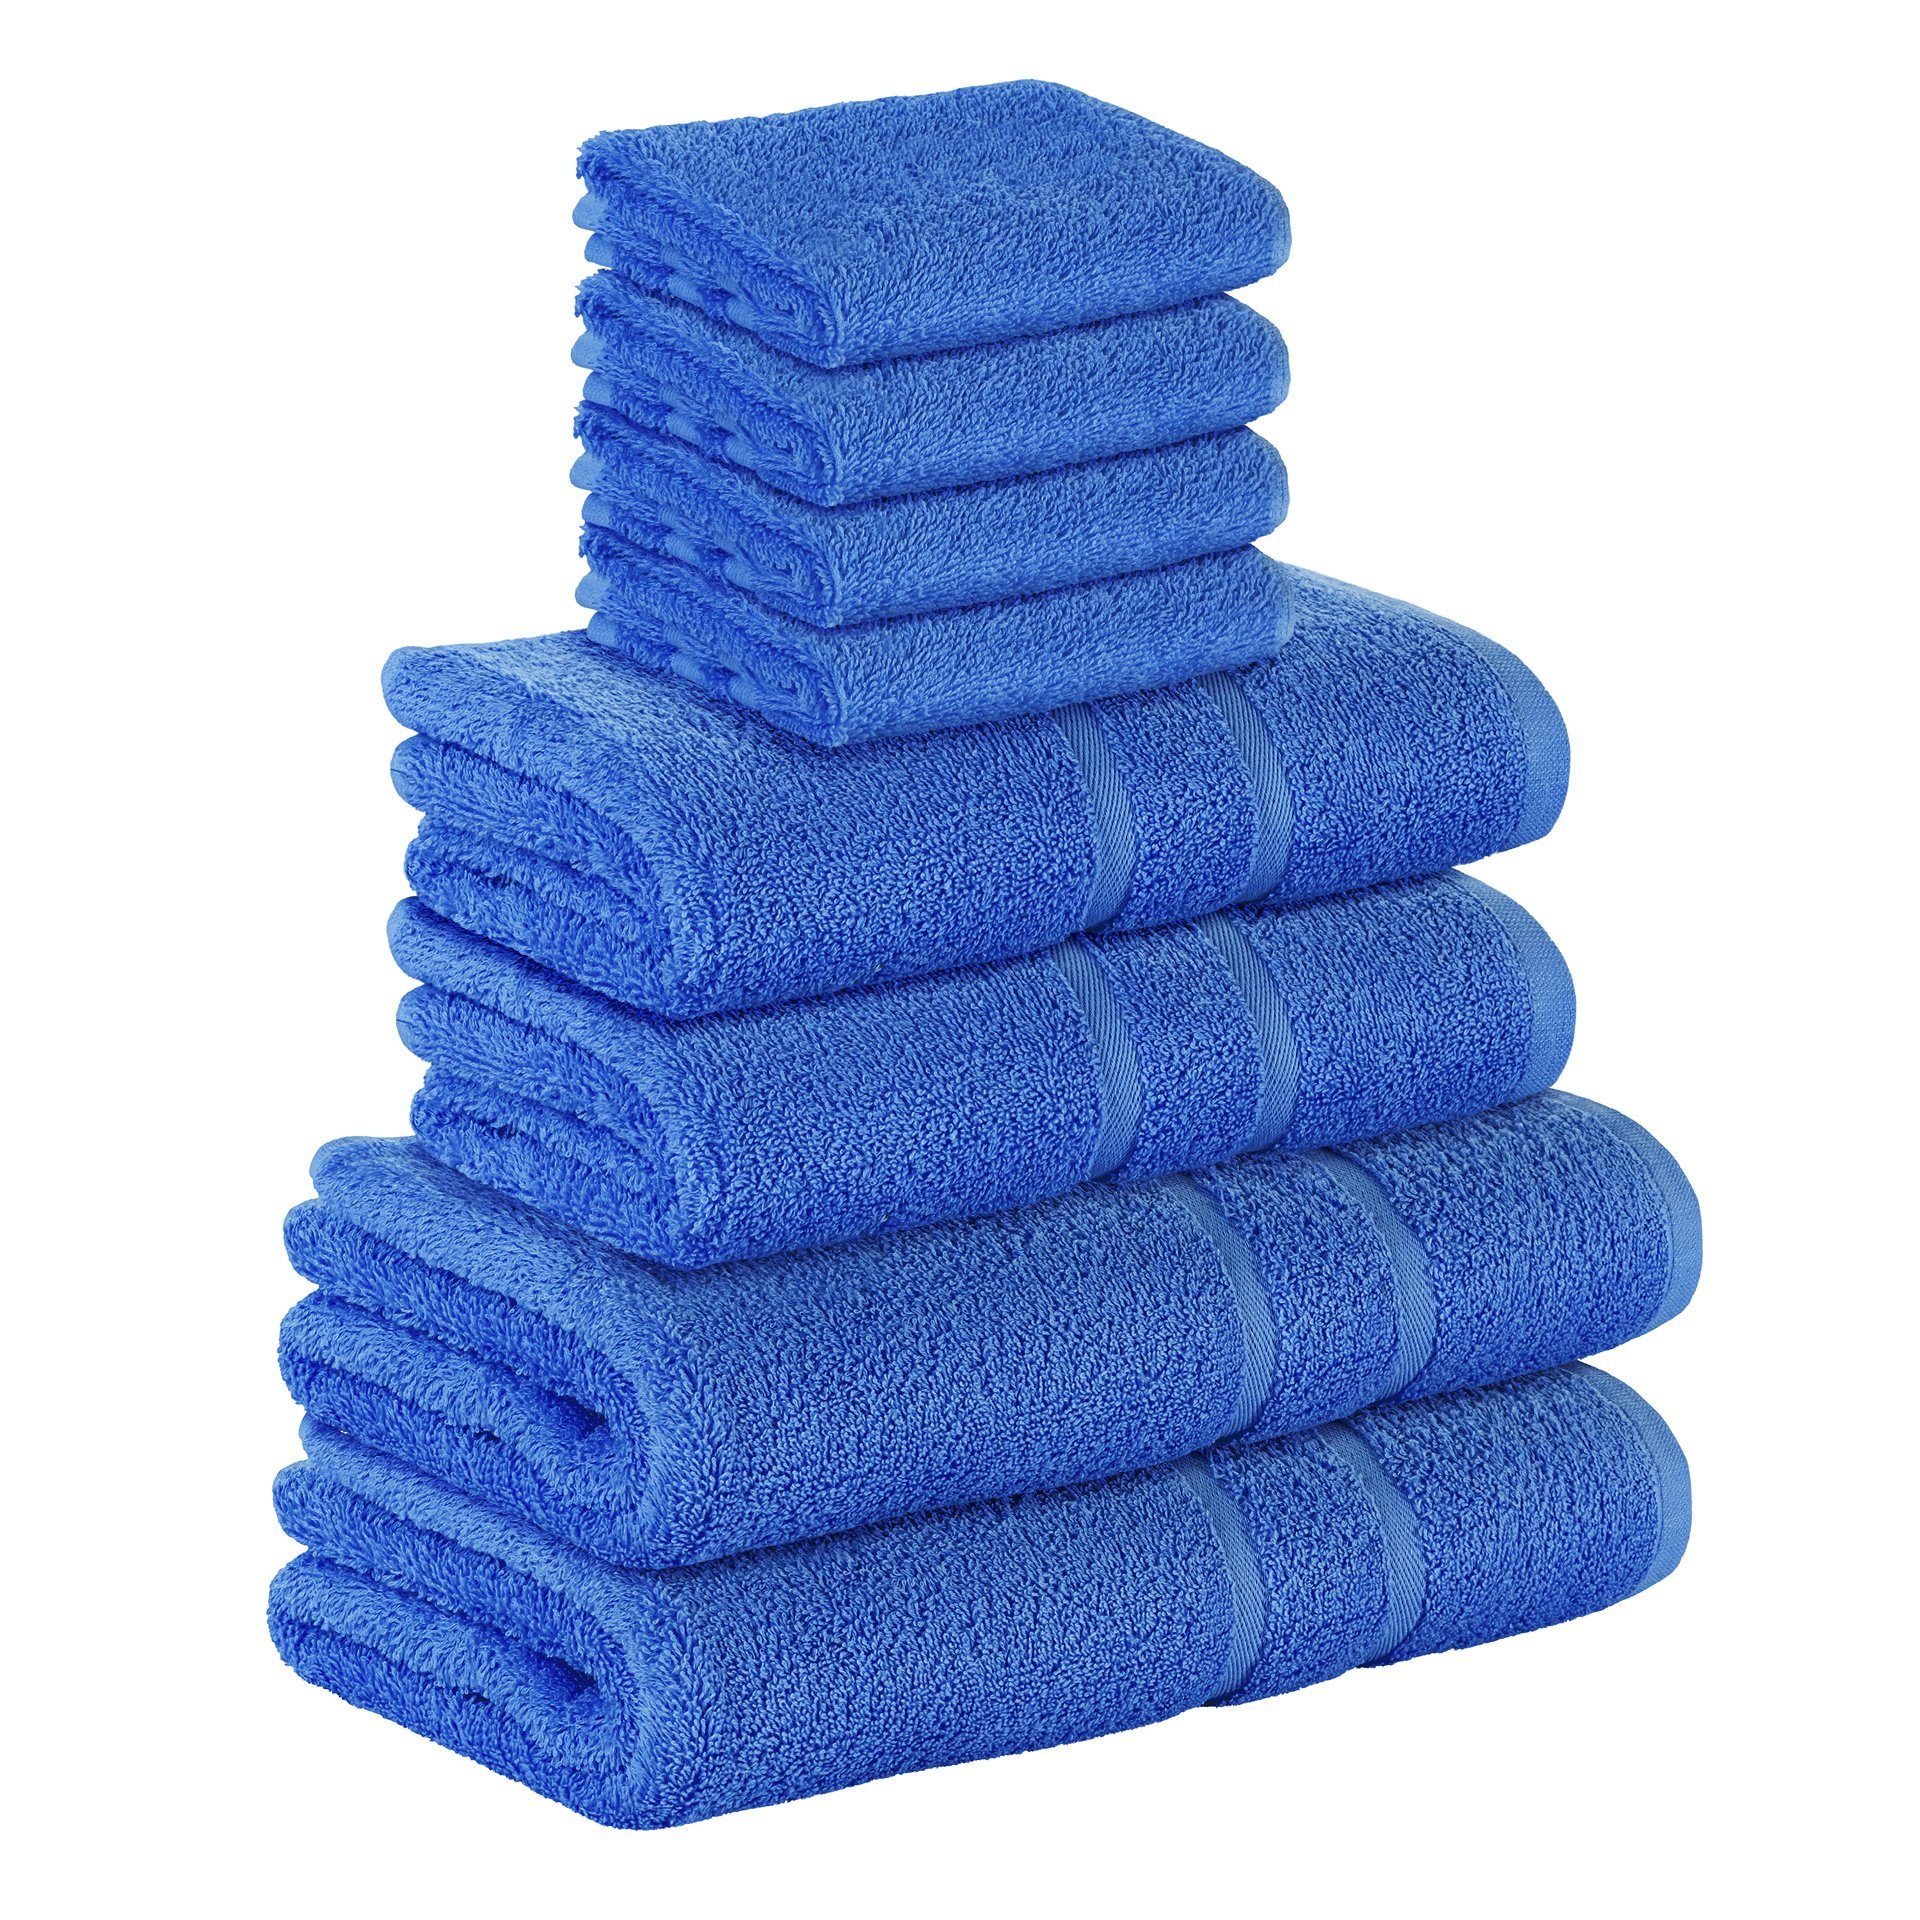 StickandShine Handtuch Set 4x Gästehandtuch 2x Handtücher 2x Duschtücher als SET in verschiedenen Farben (8 Teilig) 100% Baumwolle 500 GSM Frottee 8er Handtuch Pack, (Spar-set), 100% Baumwolle 500 GSM Blau